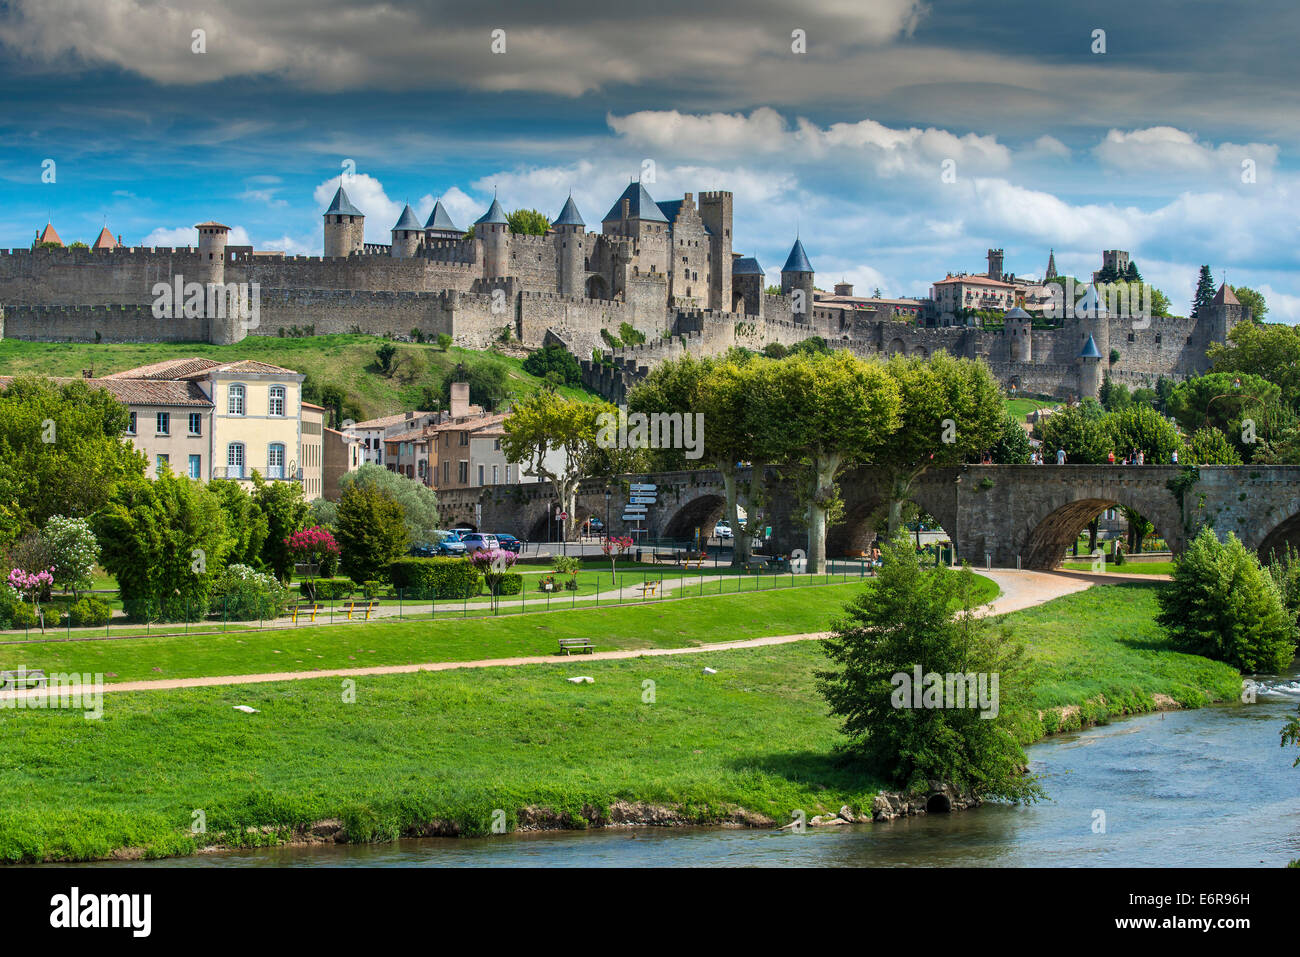 Die mittelalterliche befestigte Stadt mit Chateau Comtal, Carcassonne, Languedoc-Roussillon, Frankreich Stockfoto